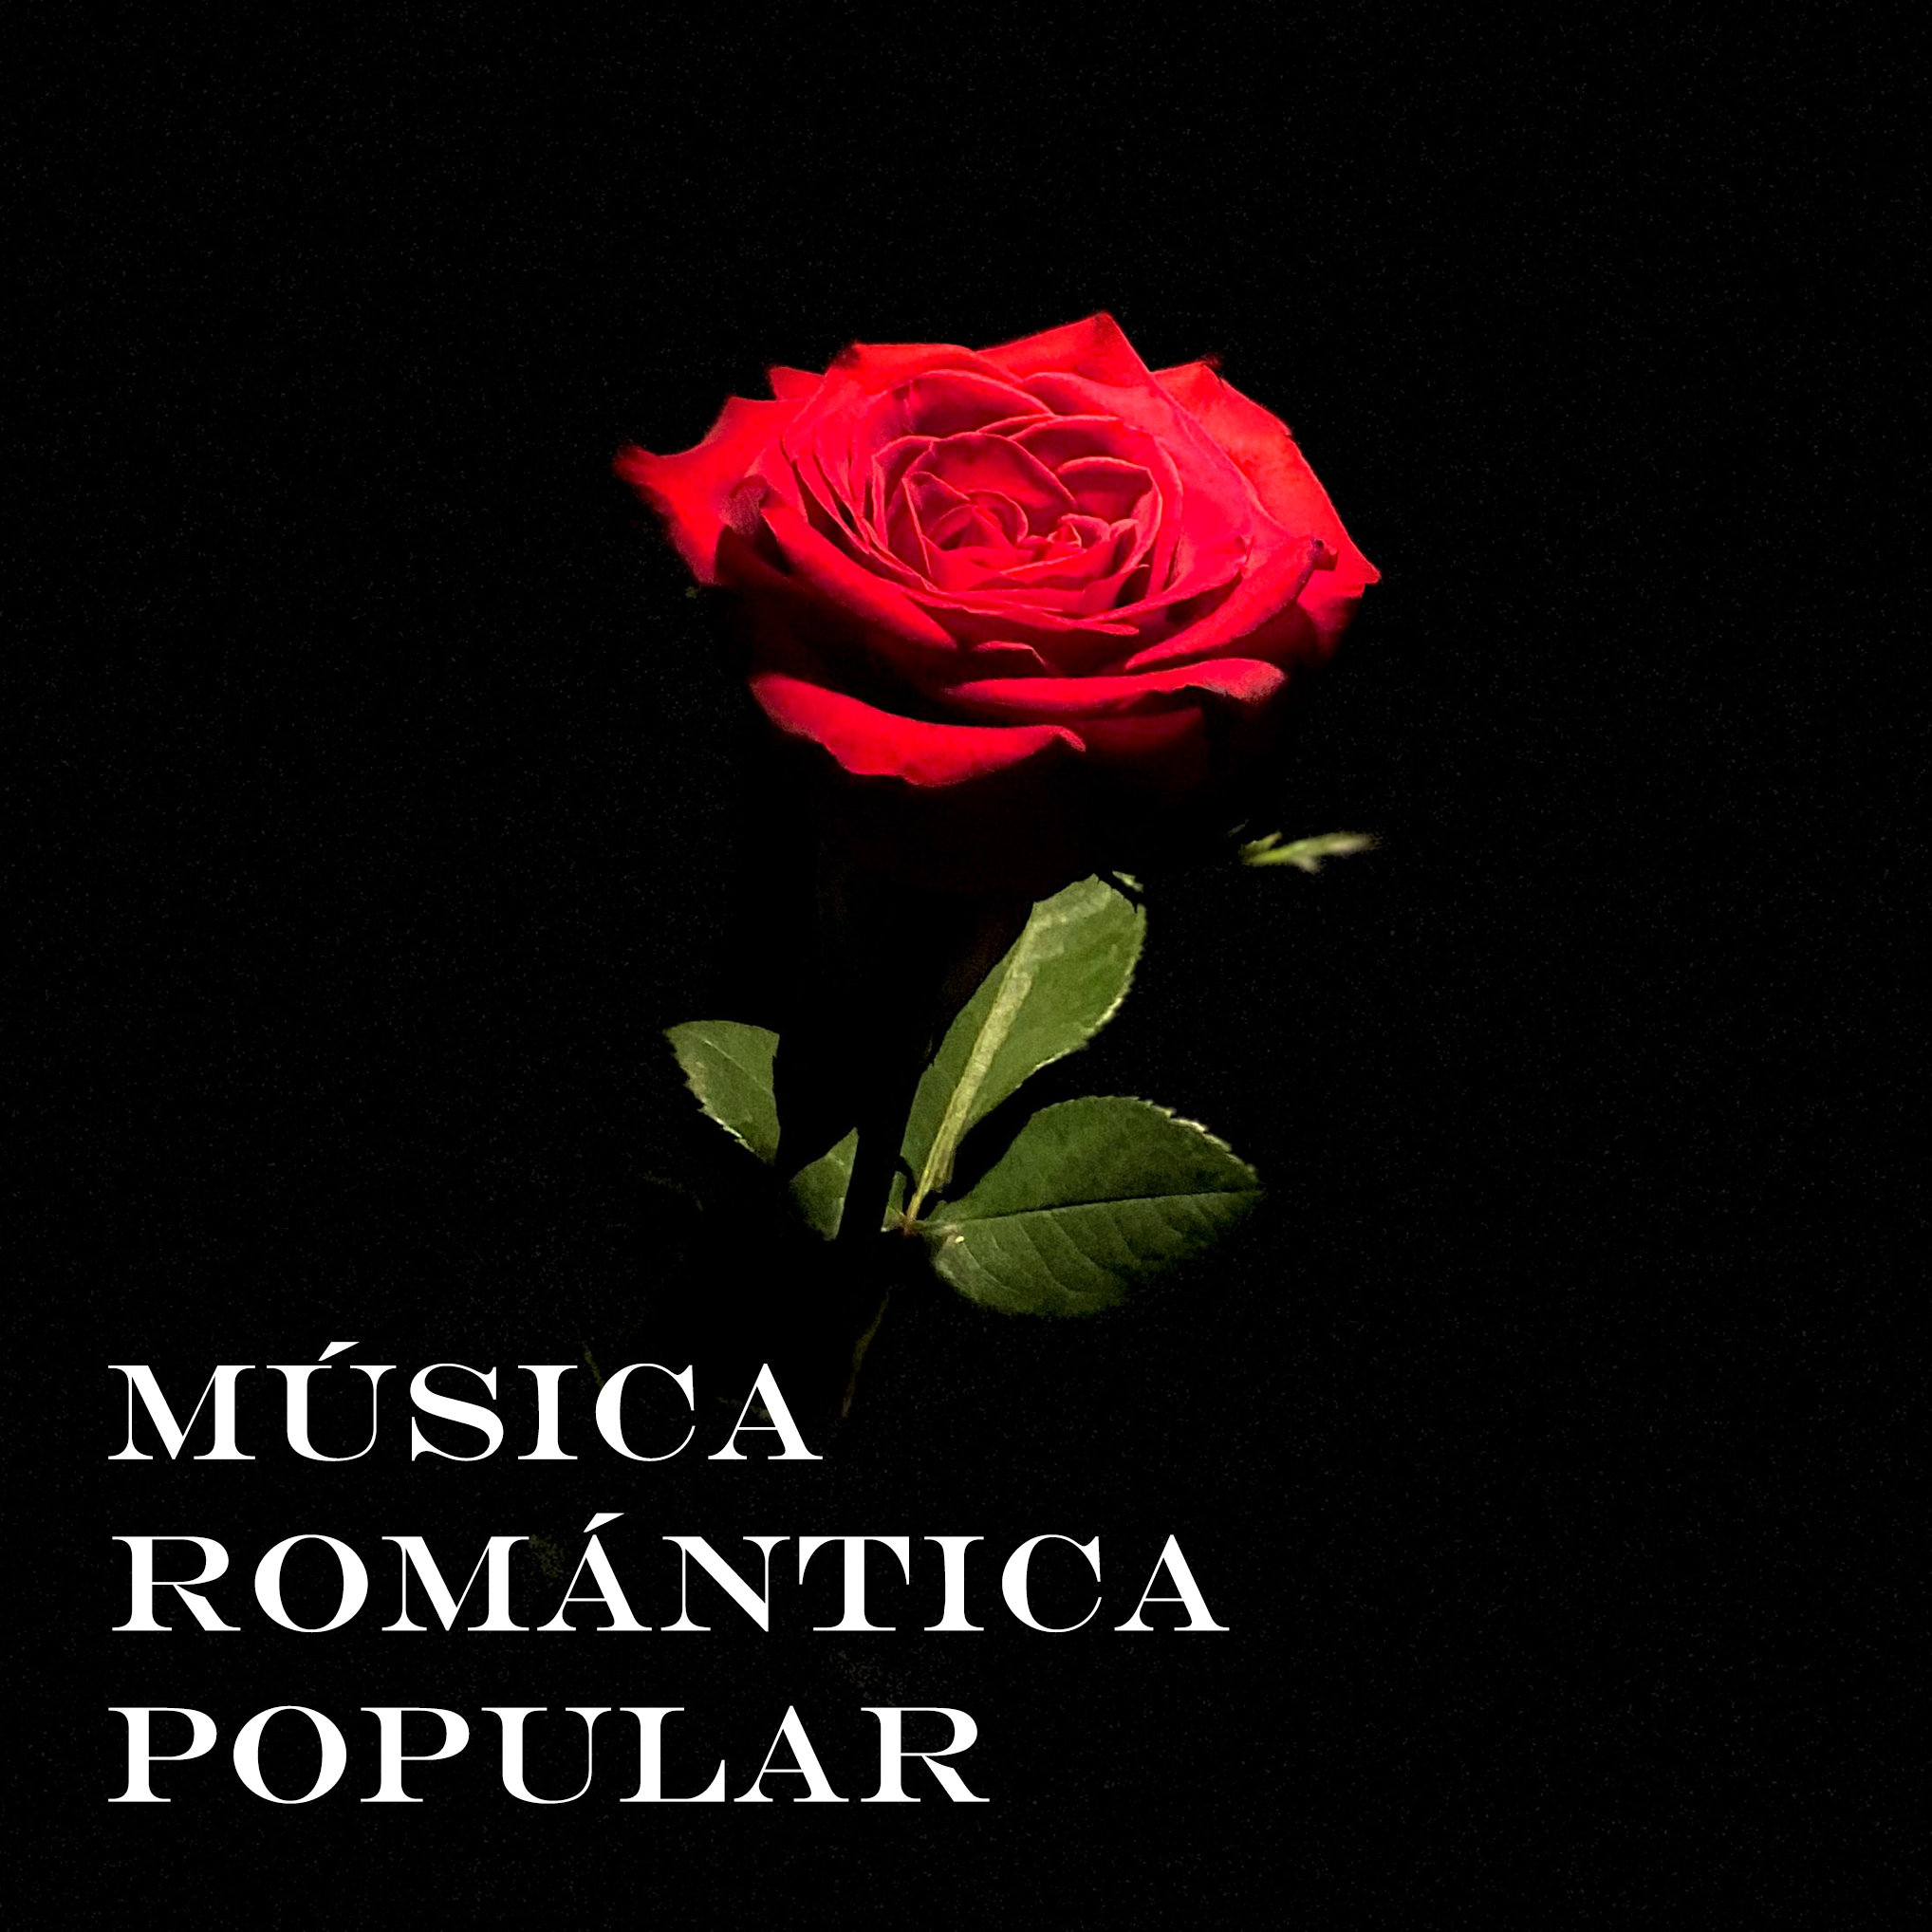 Música Romántica Popular